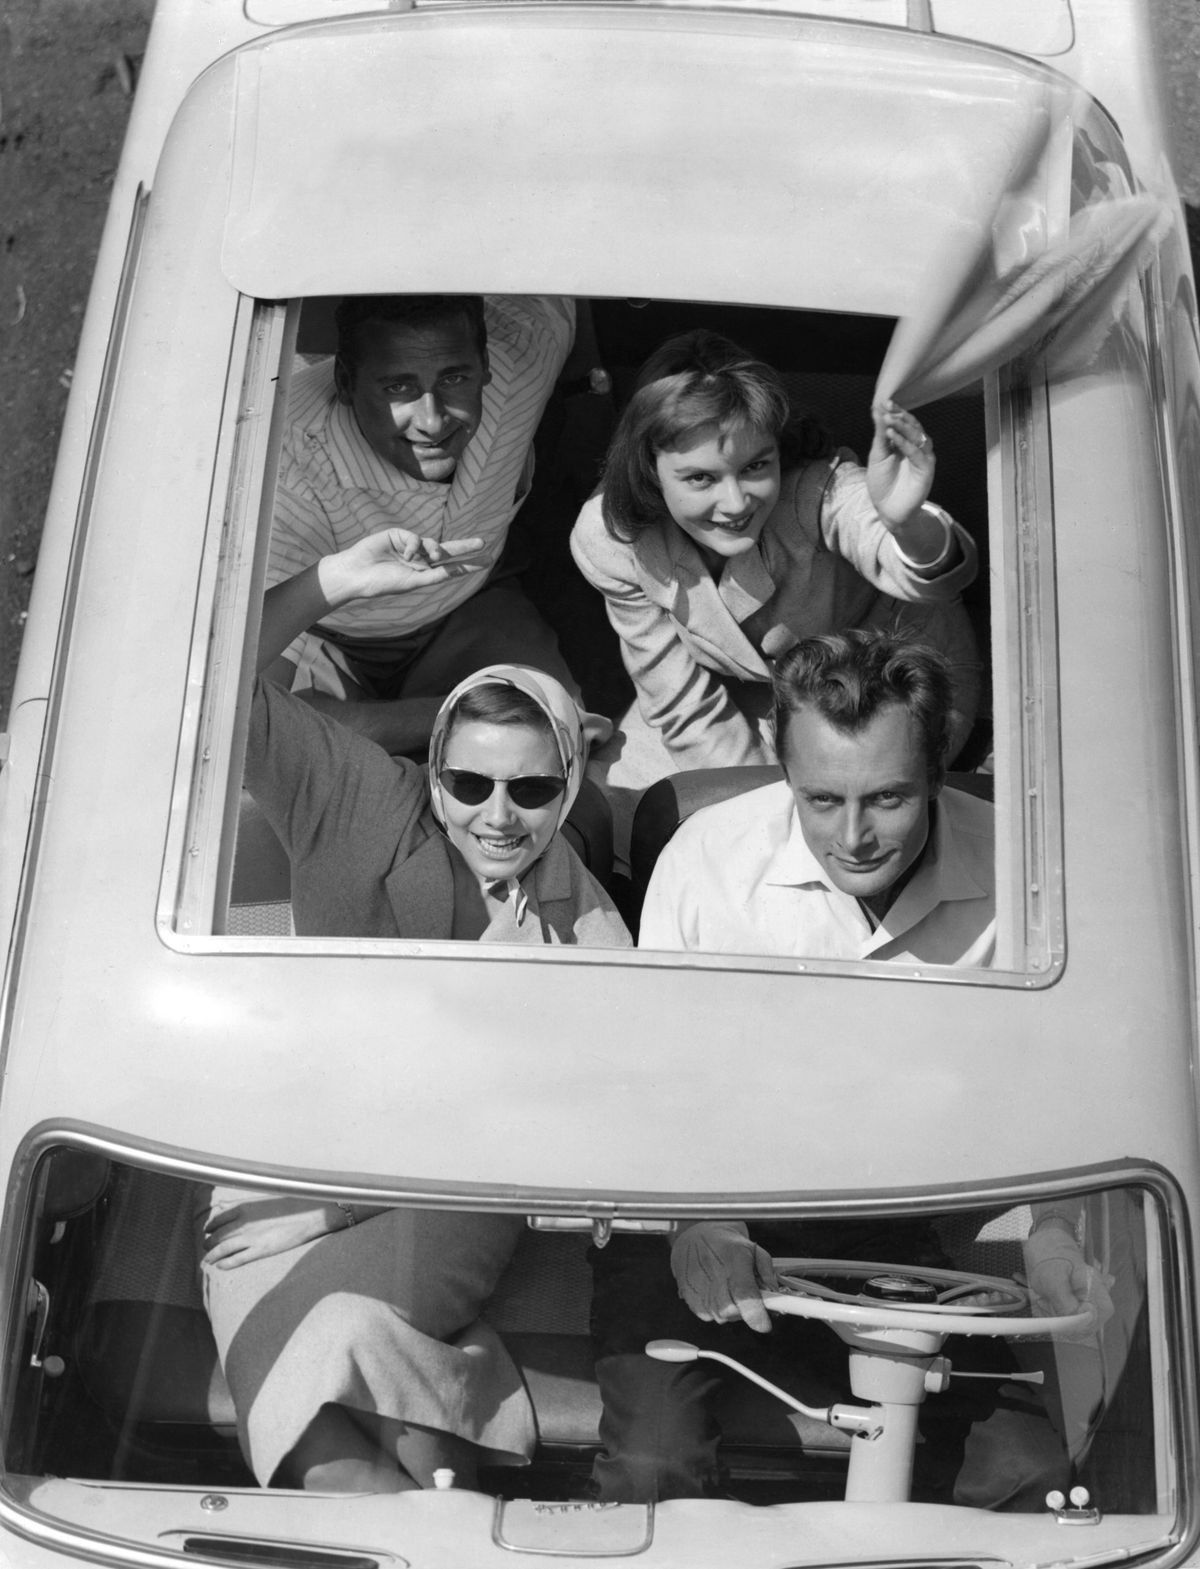 jovens acenando do teto conversível aberto de um carro na década de 1950